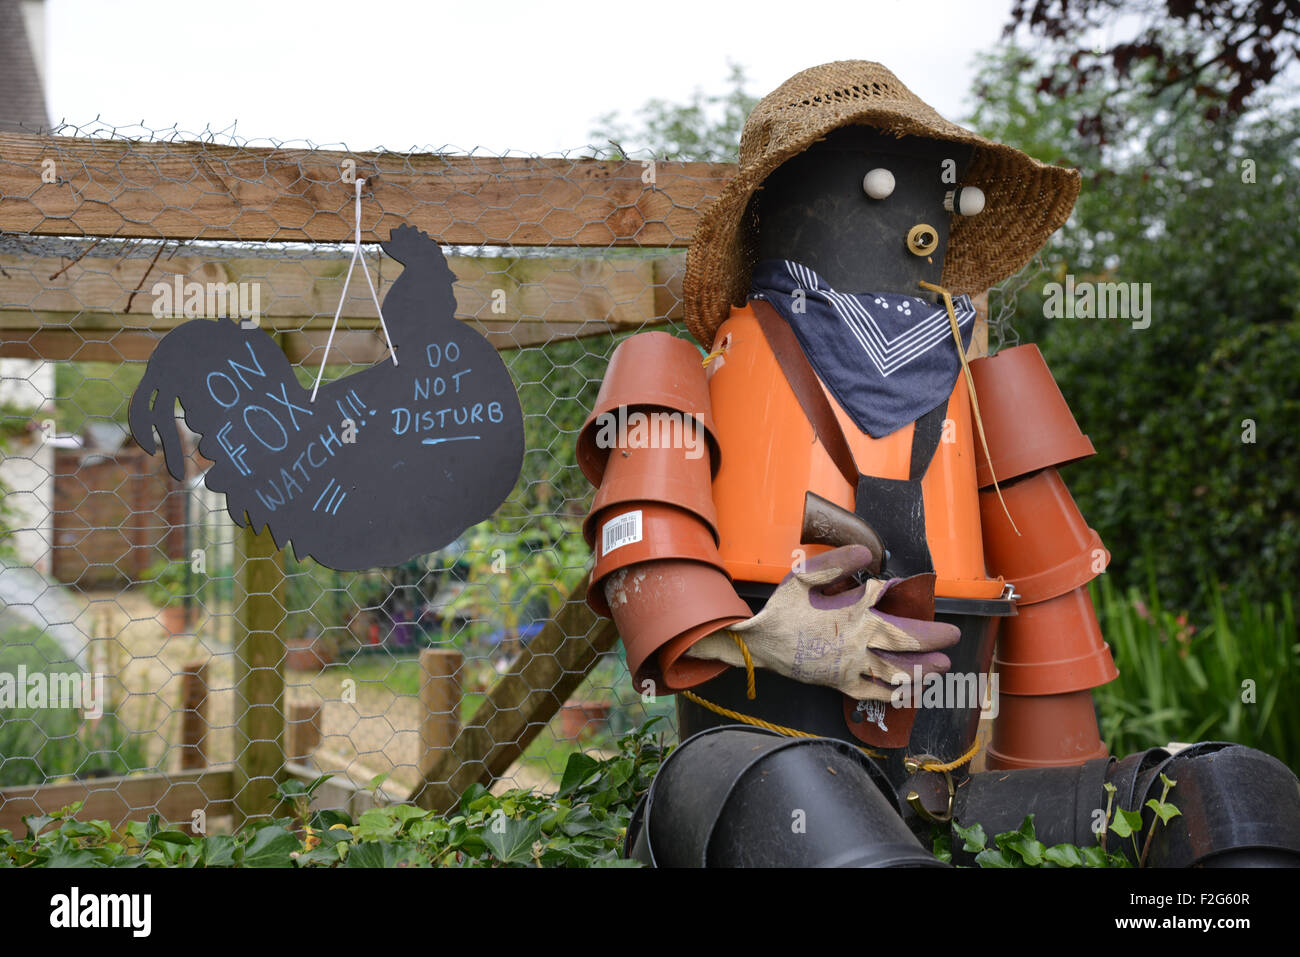 Vogelscheuche aus Blumentöpfen zusammen mit humorvollen Zeichen im Norden Oxfordshire Dorf Hook Norton gemacht Stockfoto